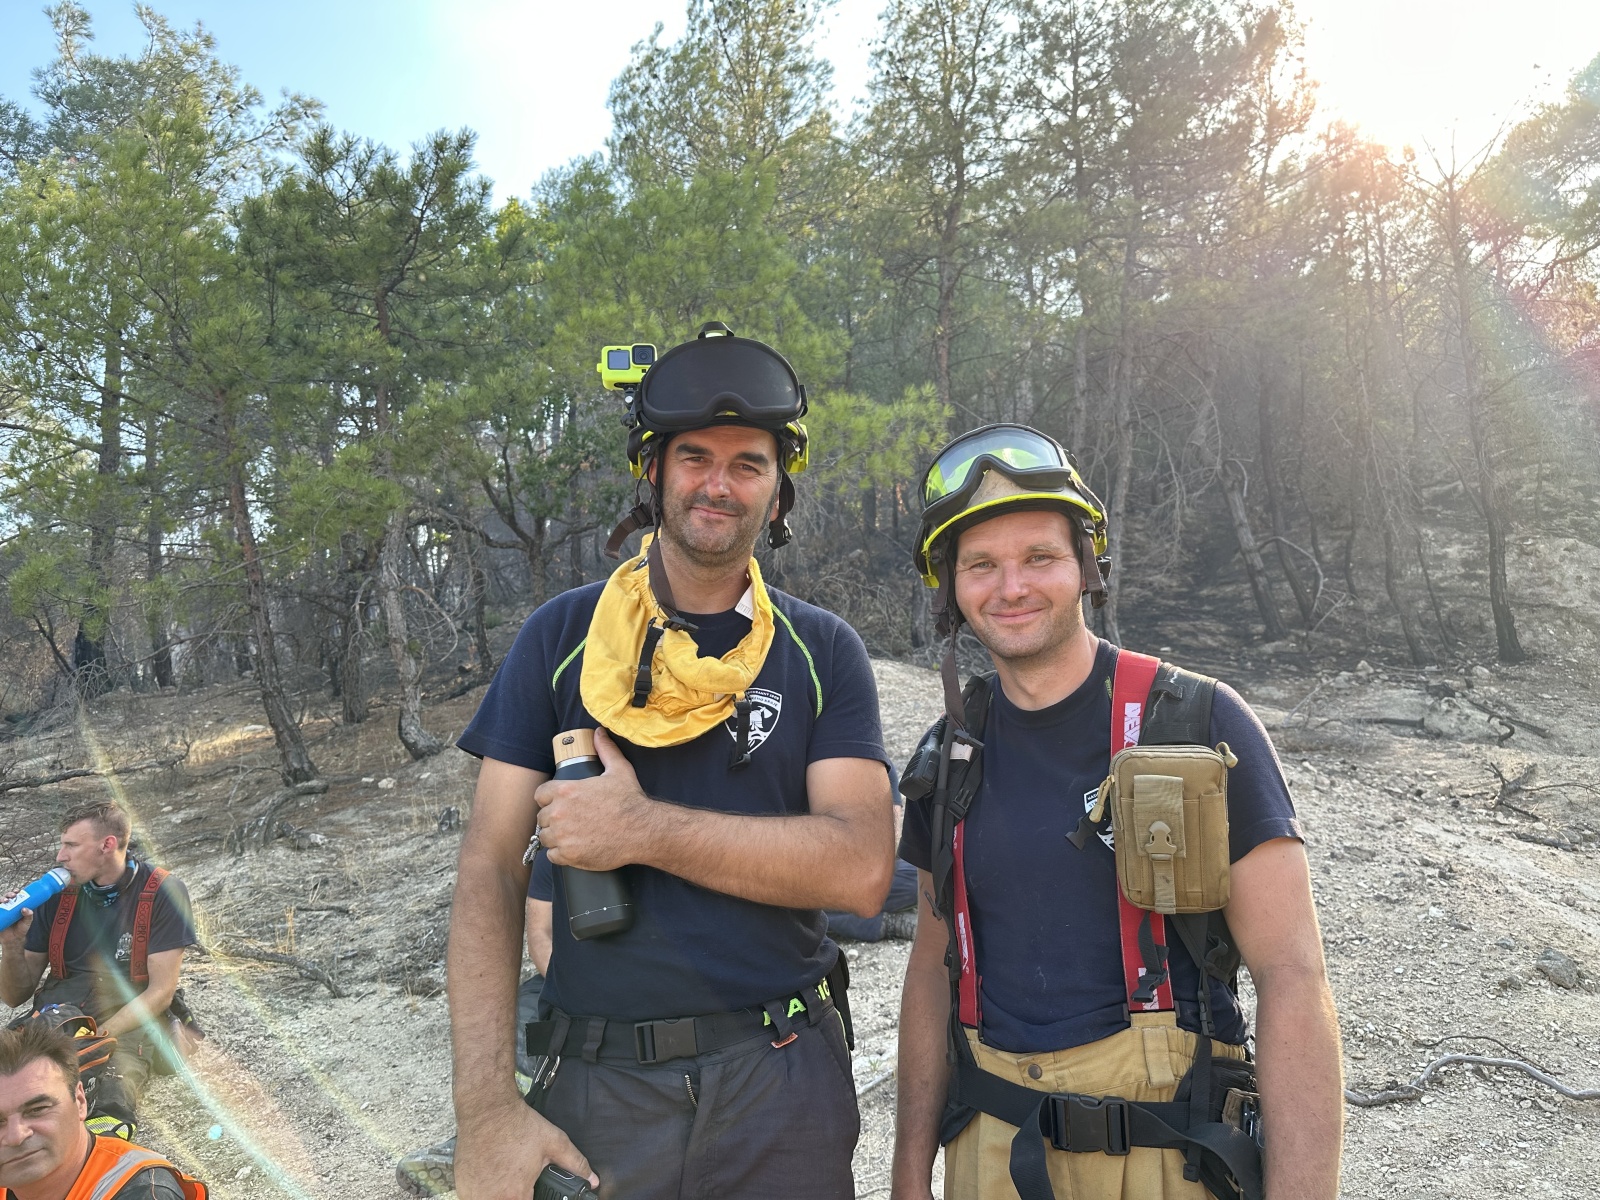 038-Pomoc českých hasičů při požárech v Řecku.JPG